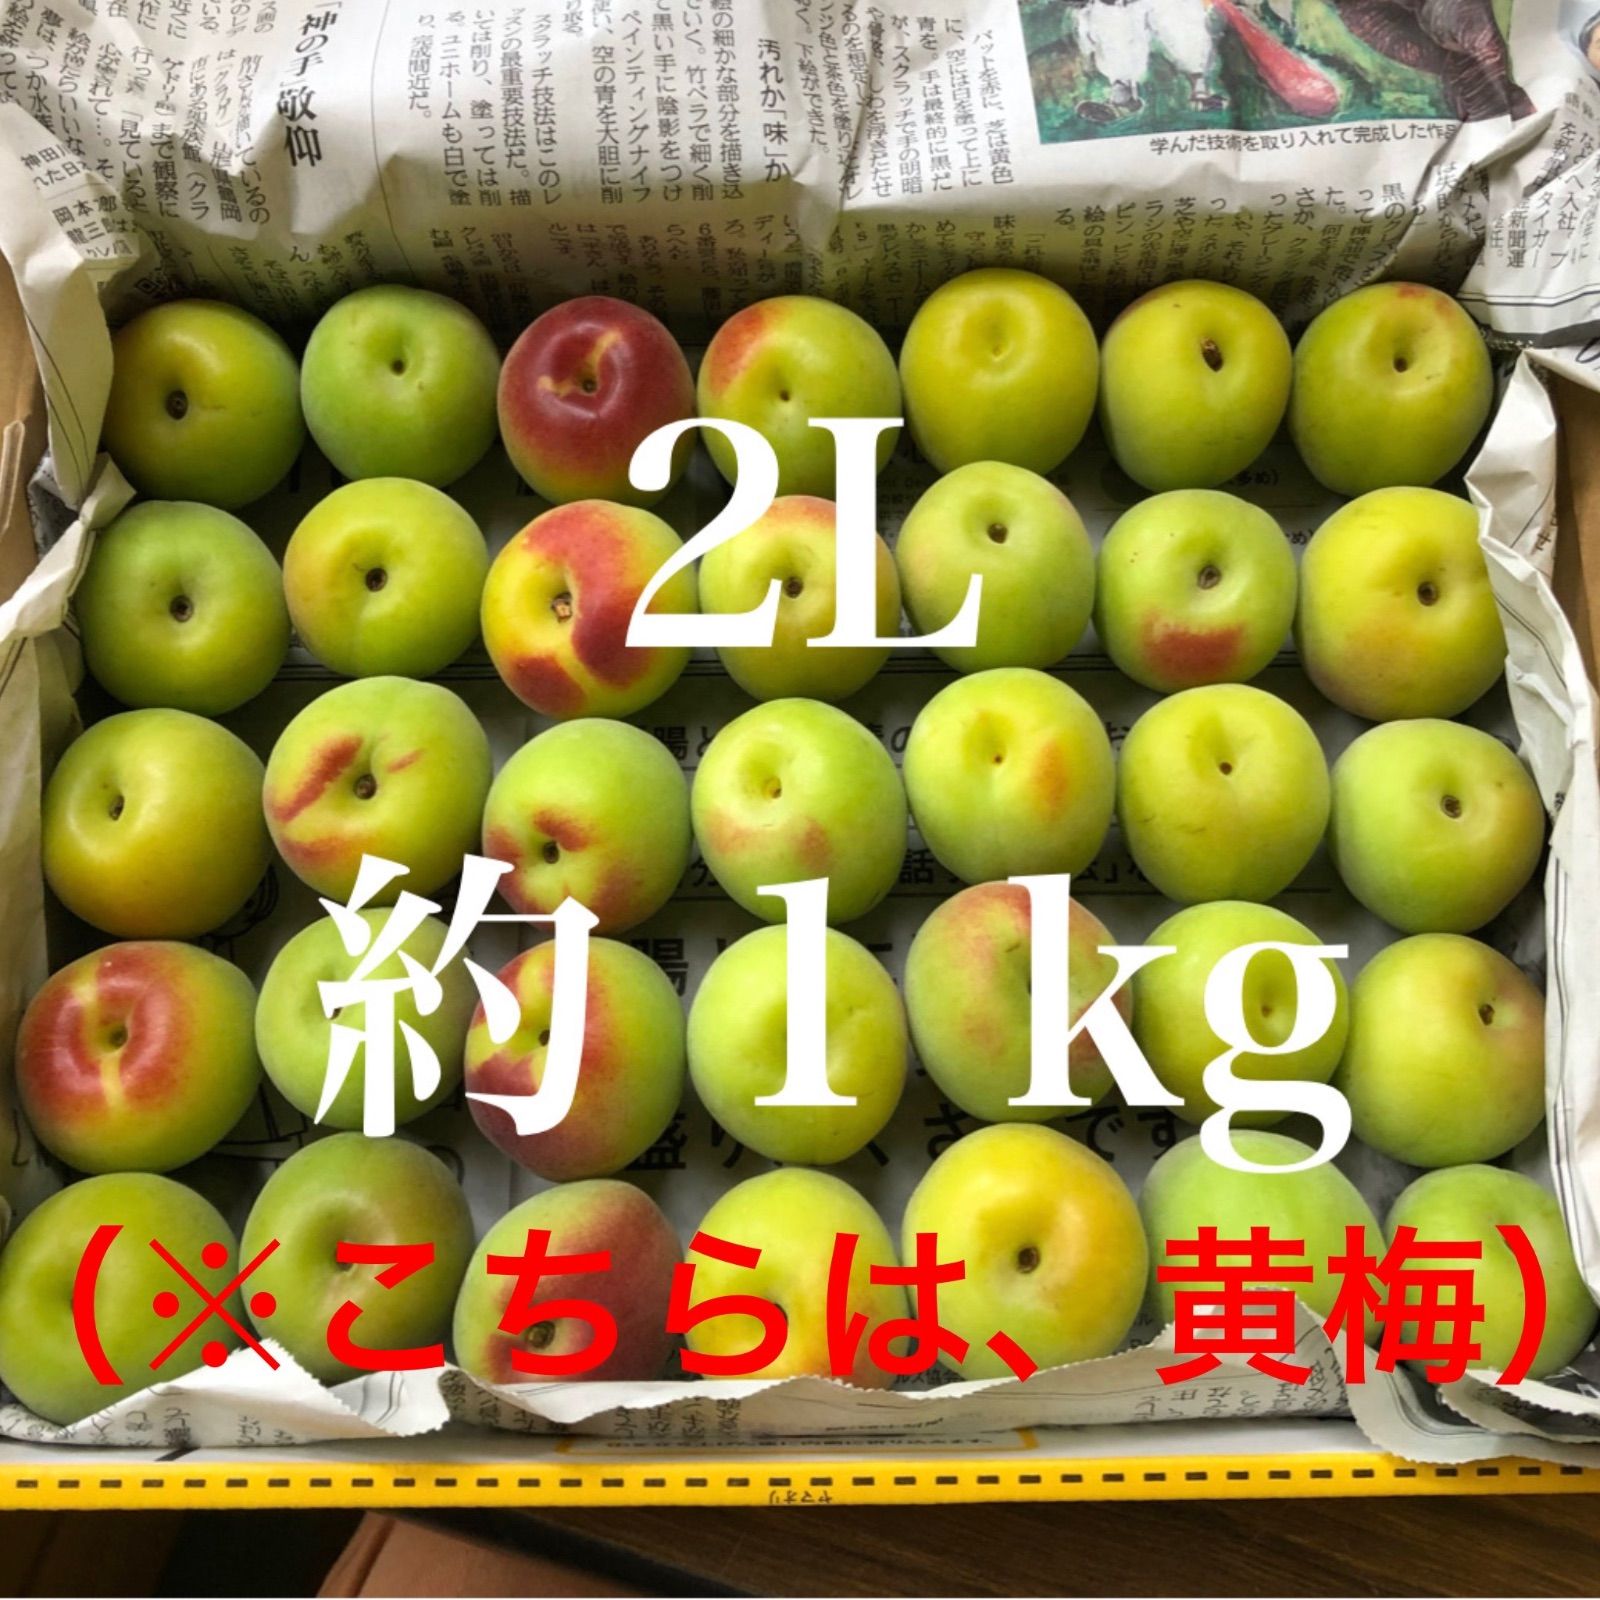 ○黄梅【2L・3kg】南高梅 - メルカリShops